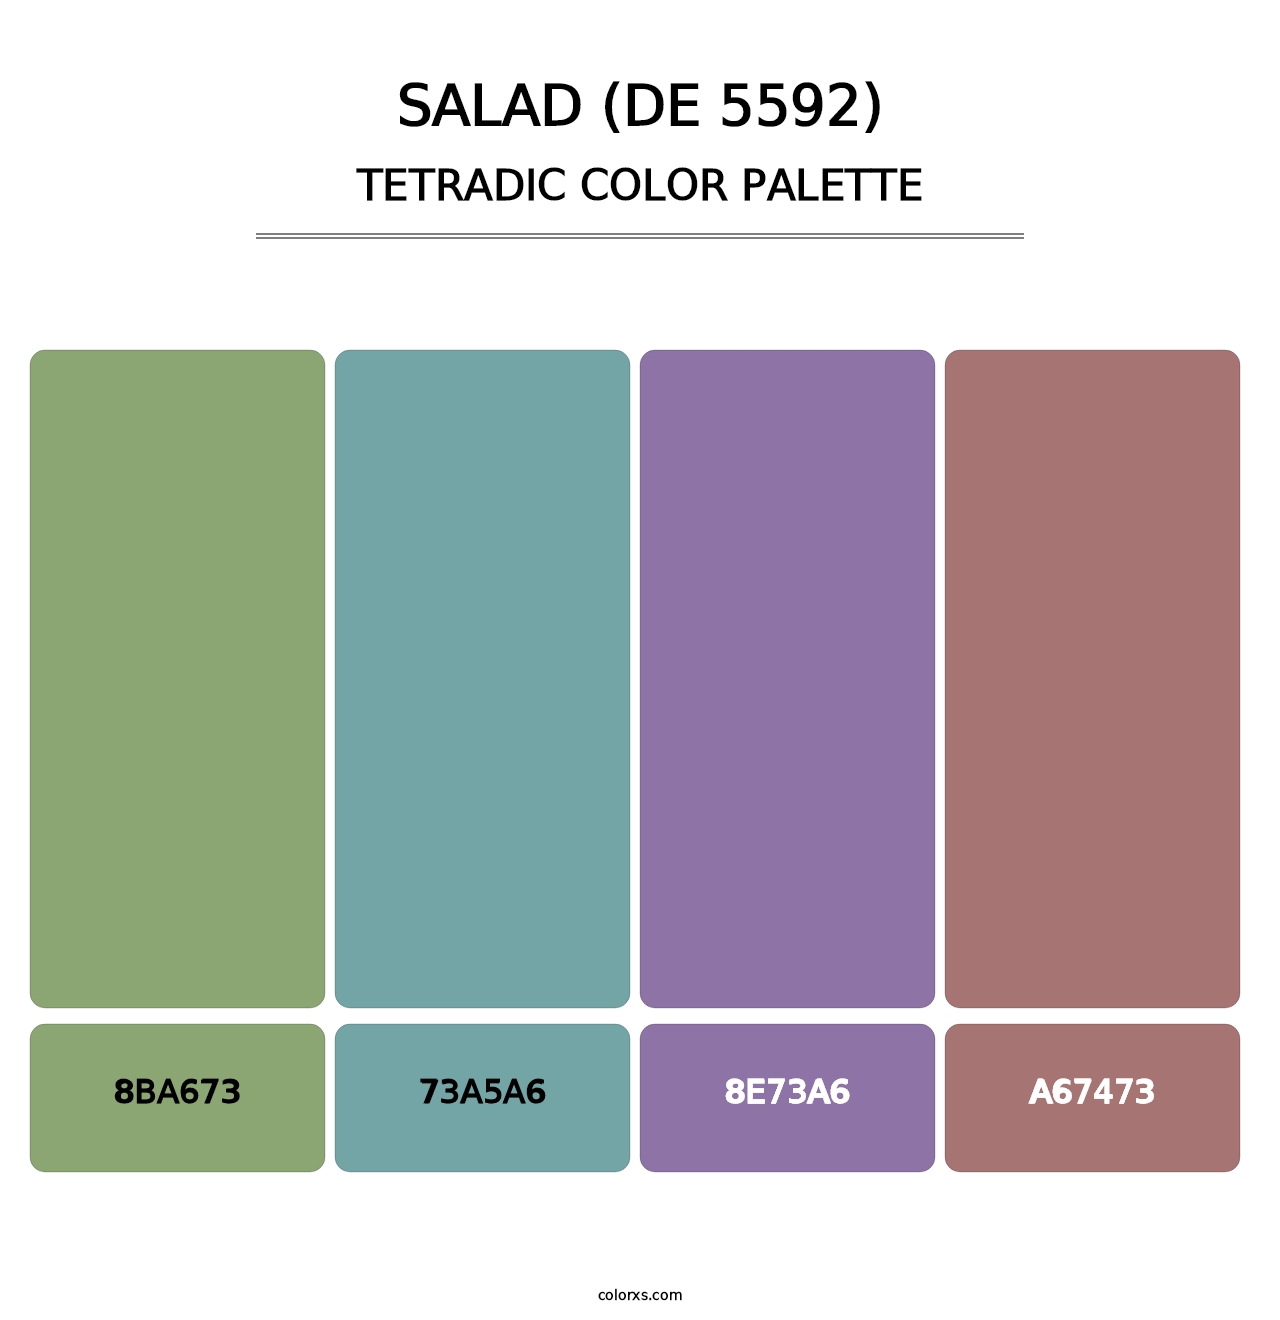 Salad (DE 5592) - Tetradic Color Palette